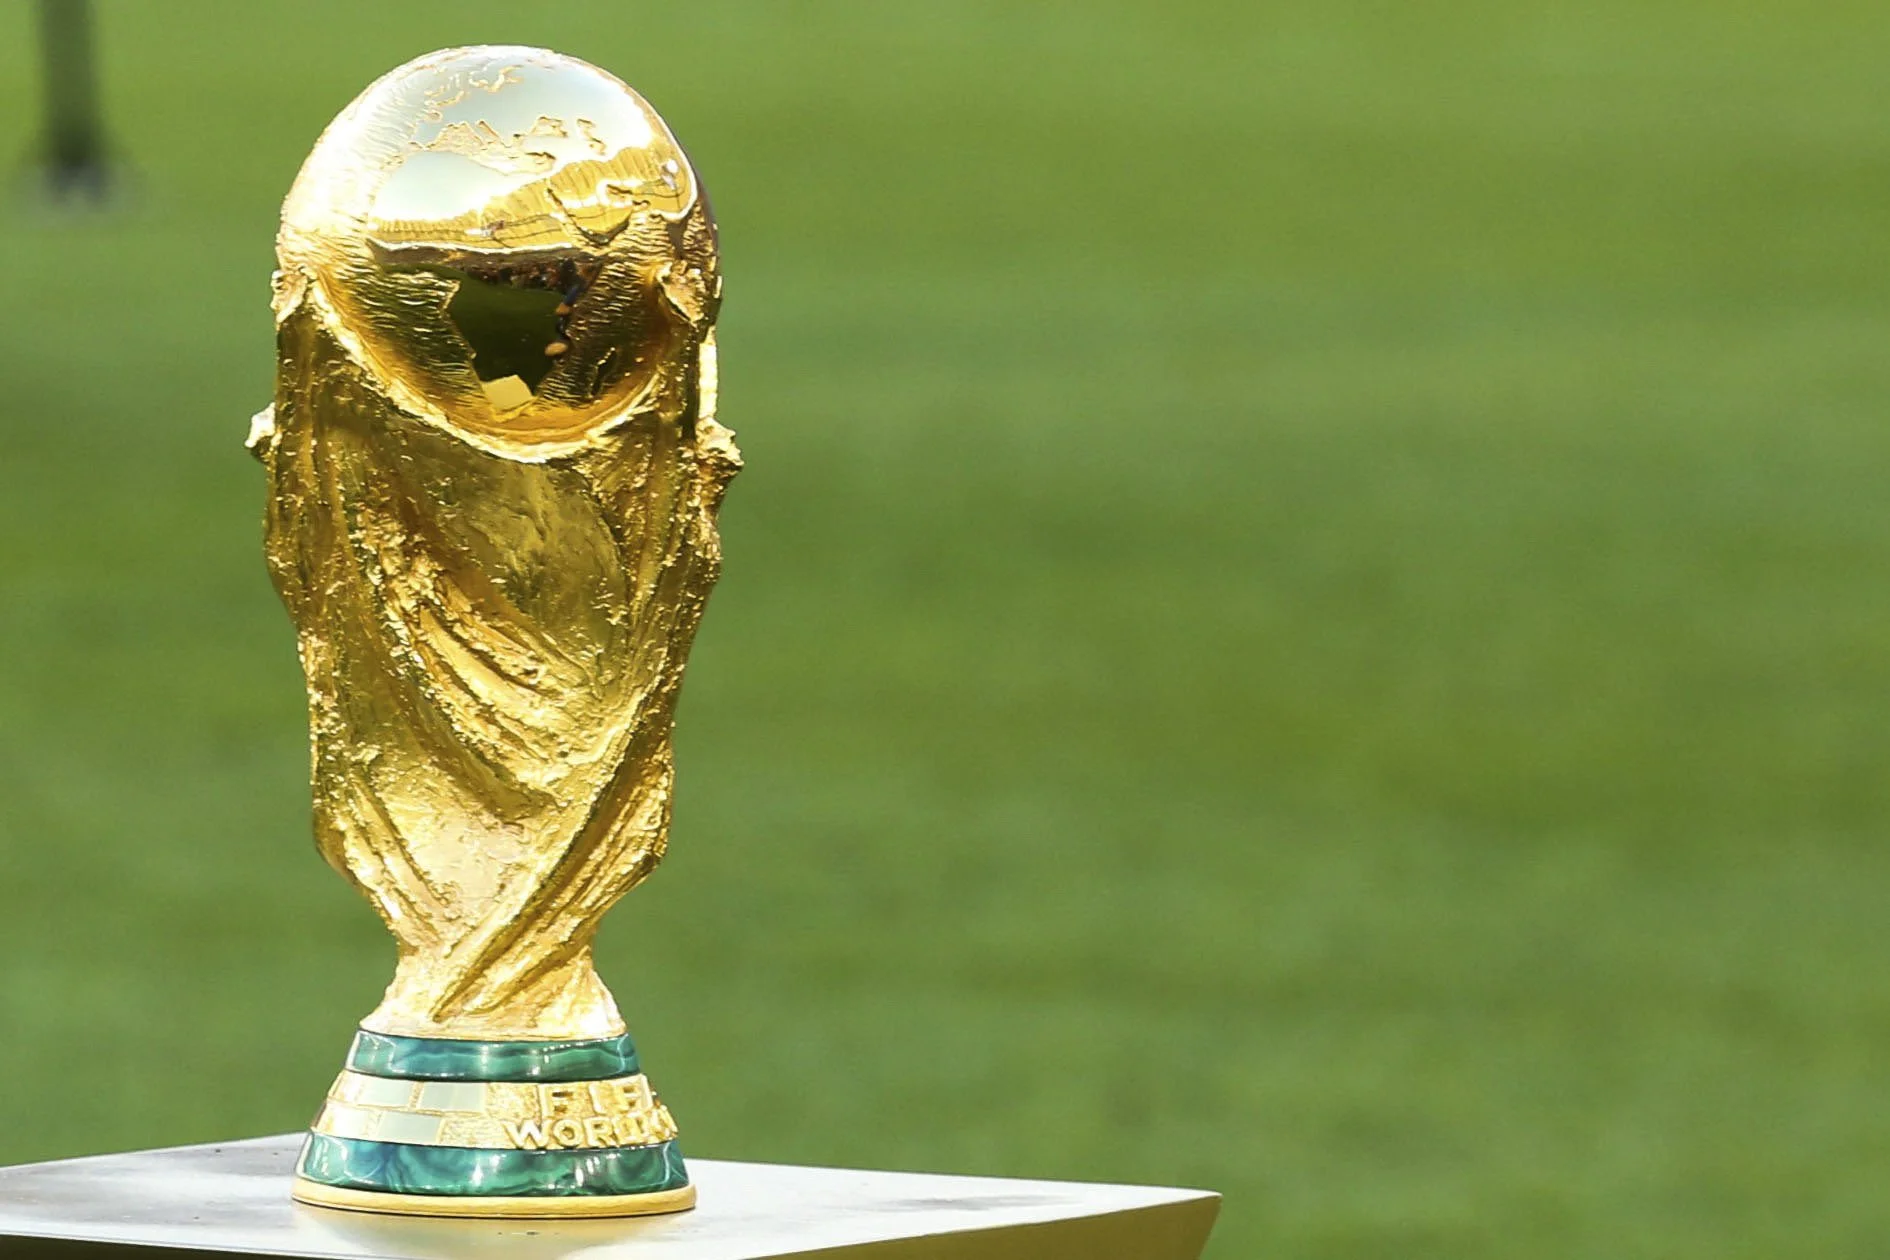 Arrancó el Mundial de Qatar 2022, empezó la fiesta de la Copa del Mundo